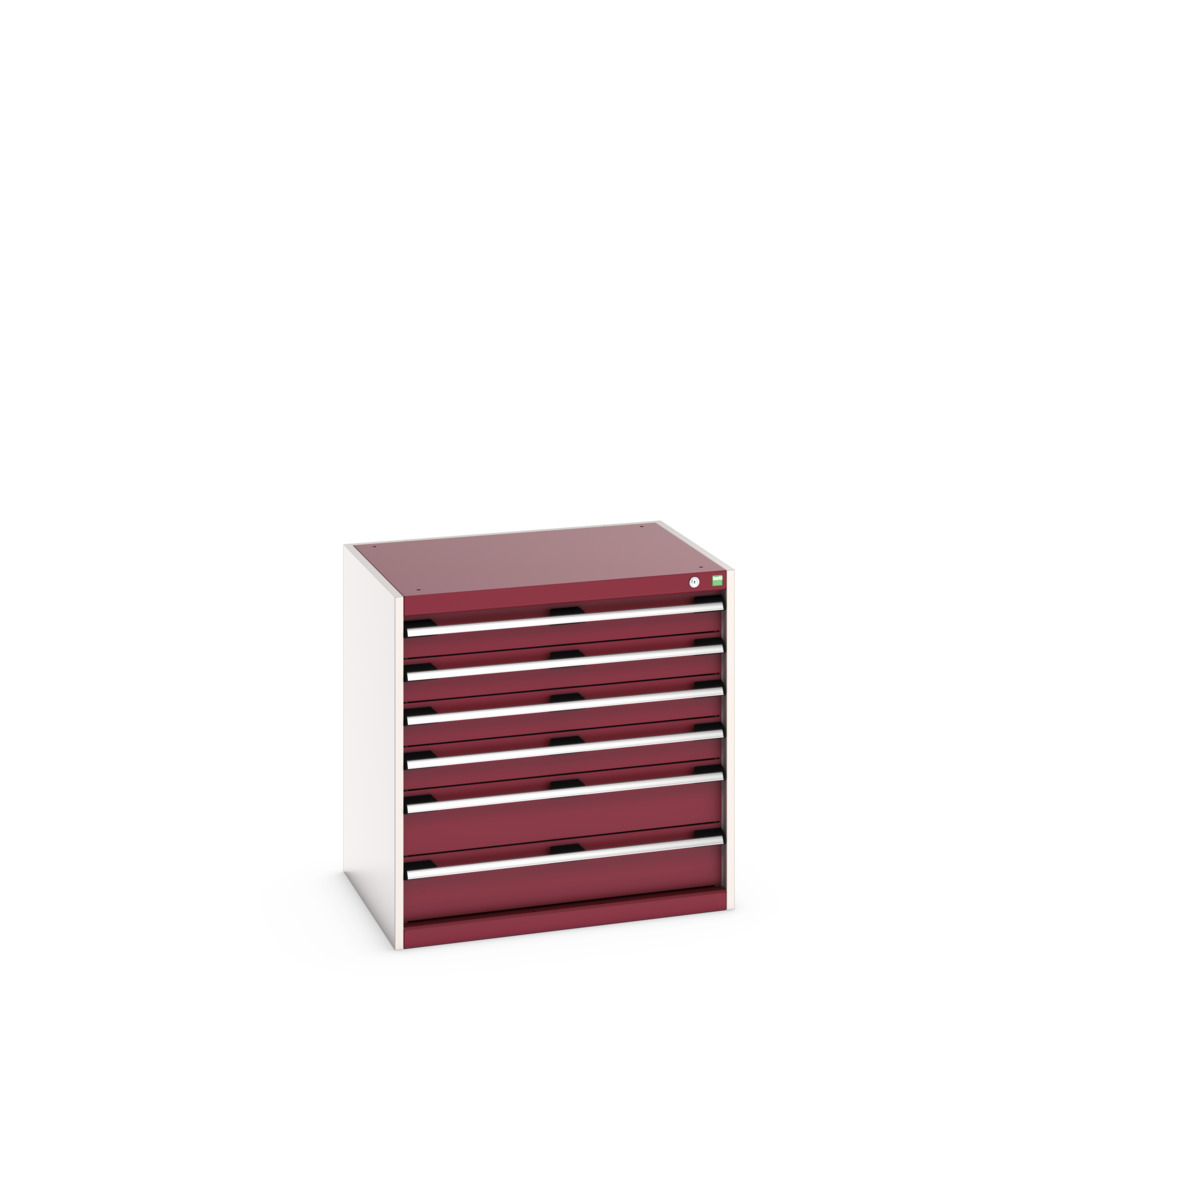 40020139.24V - cubio drawer cabinet